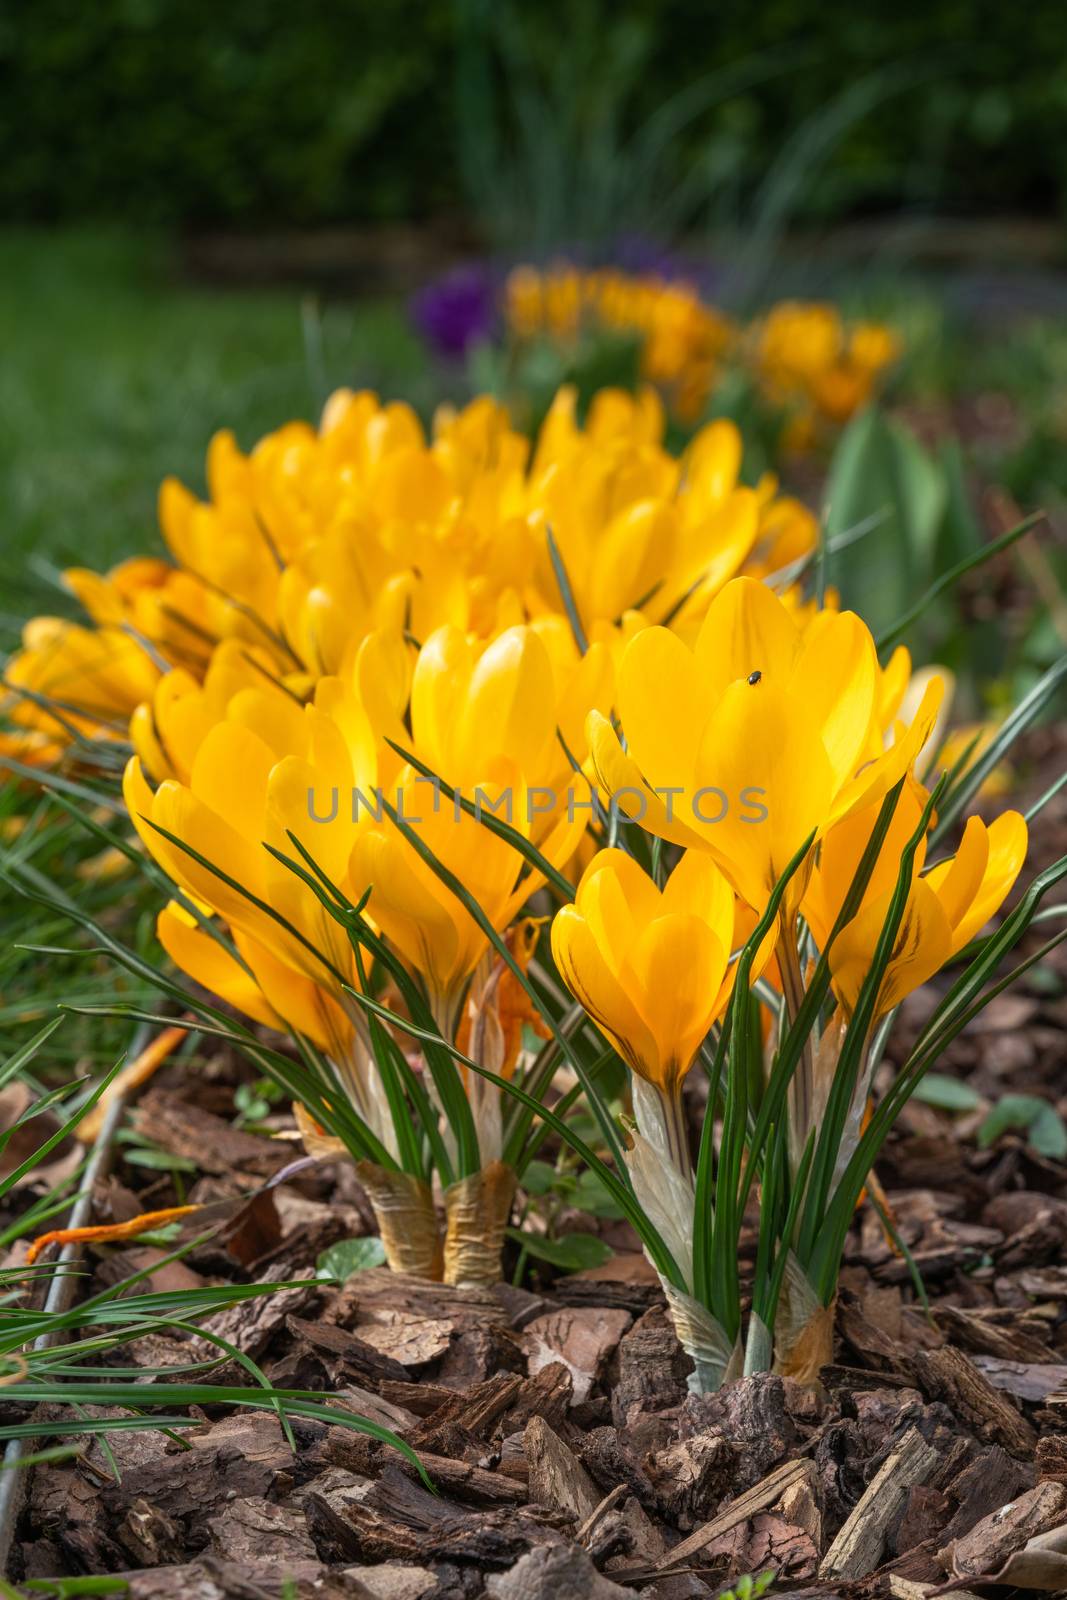 Crocus, flowers of the spring by alfotokunst